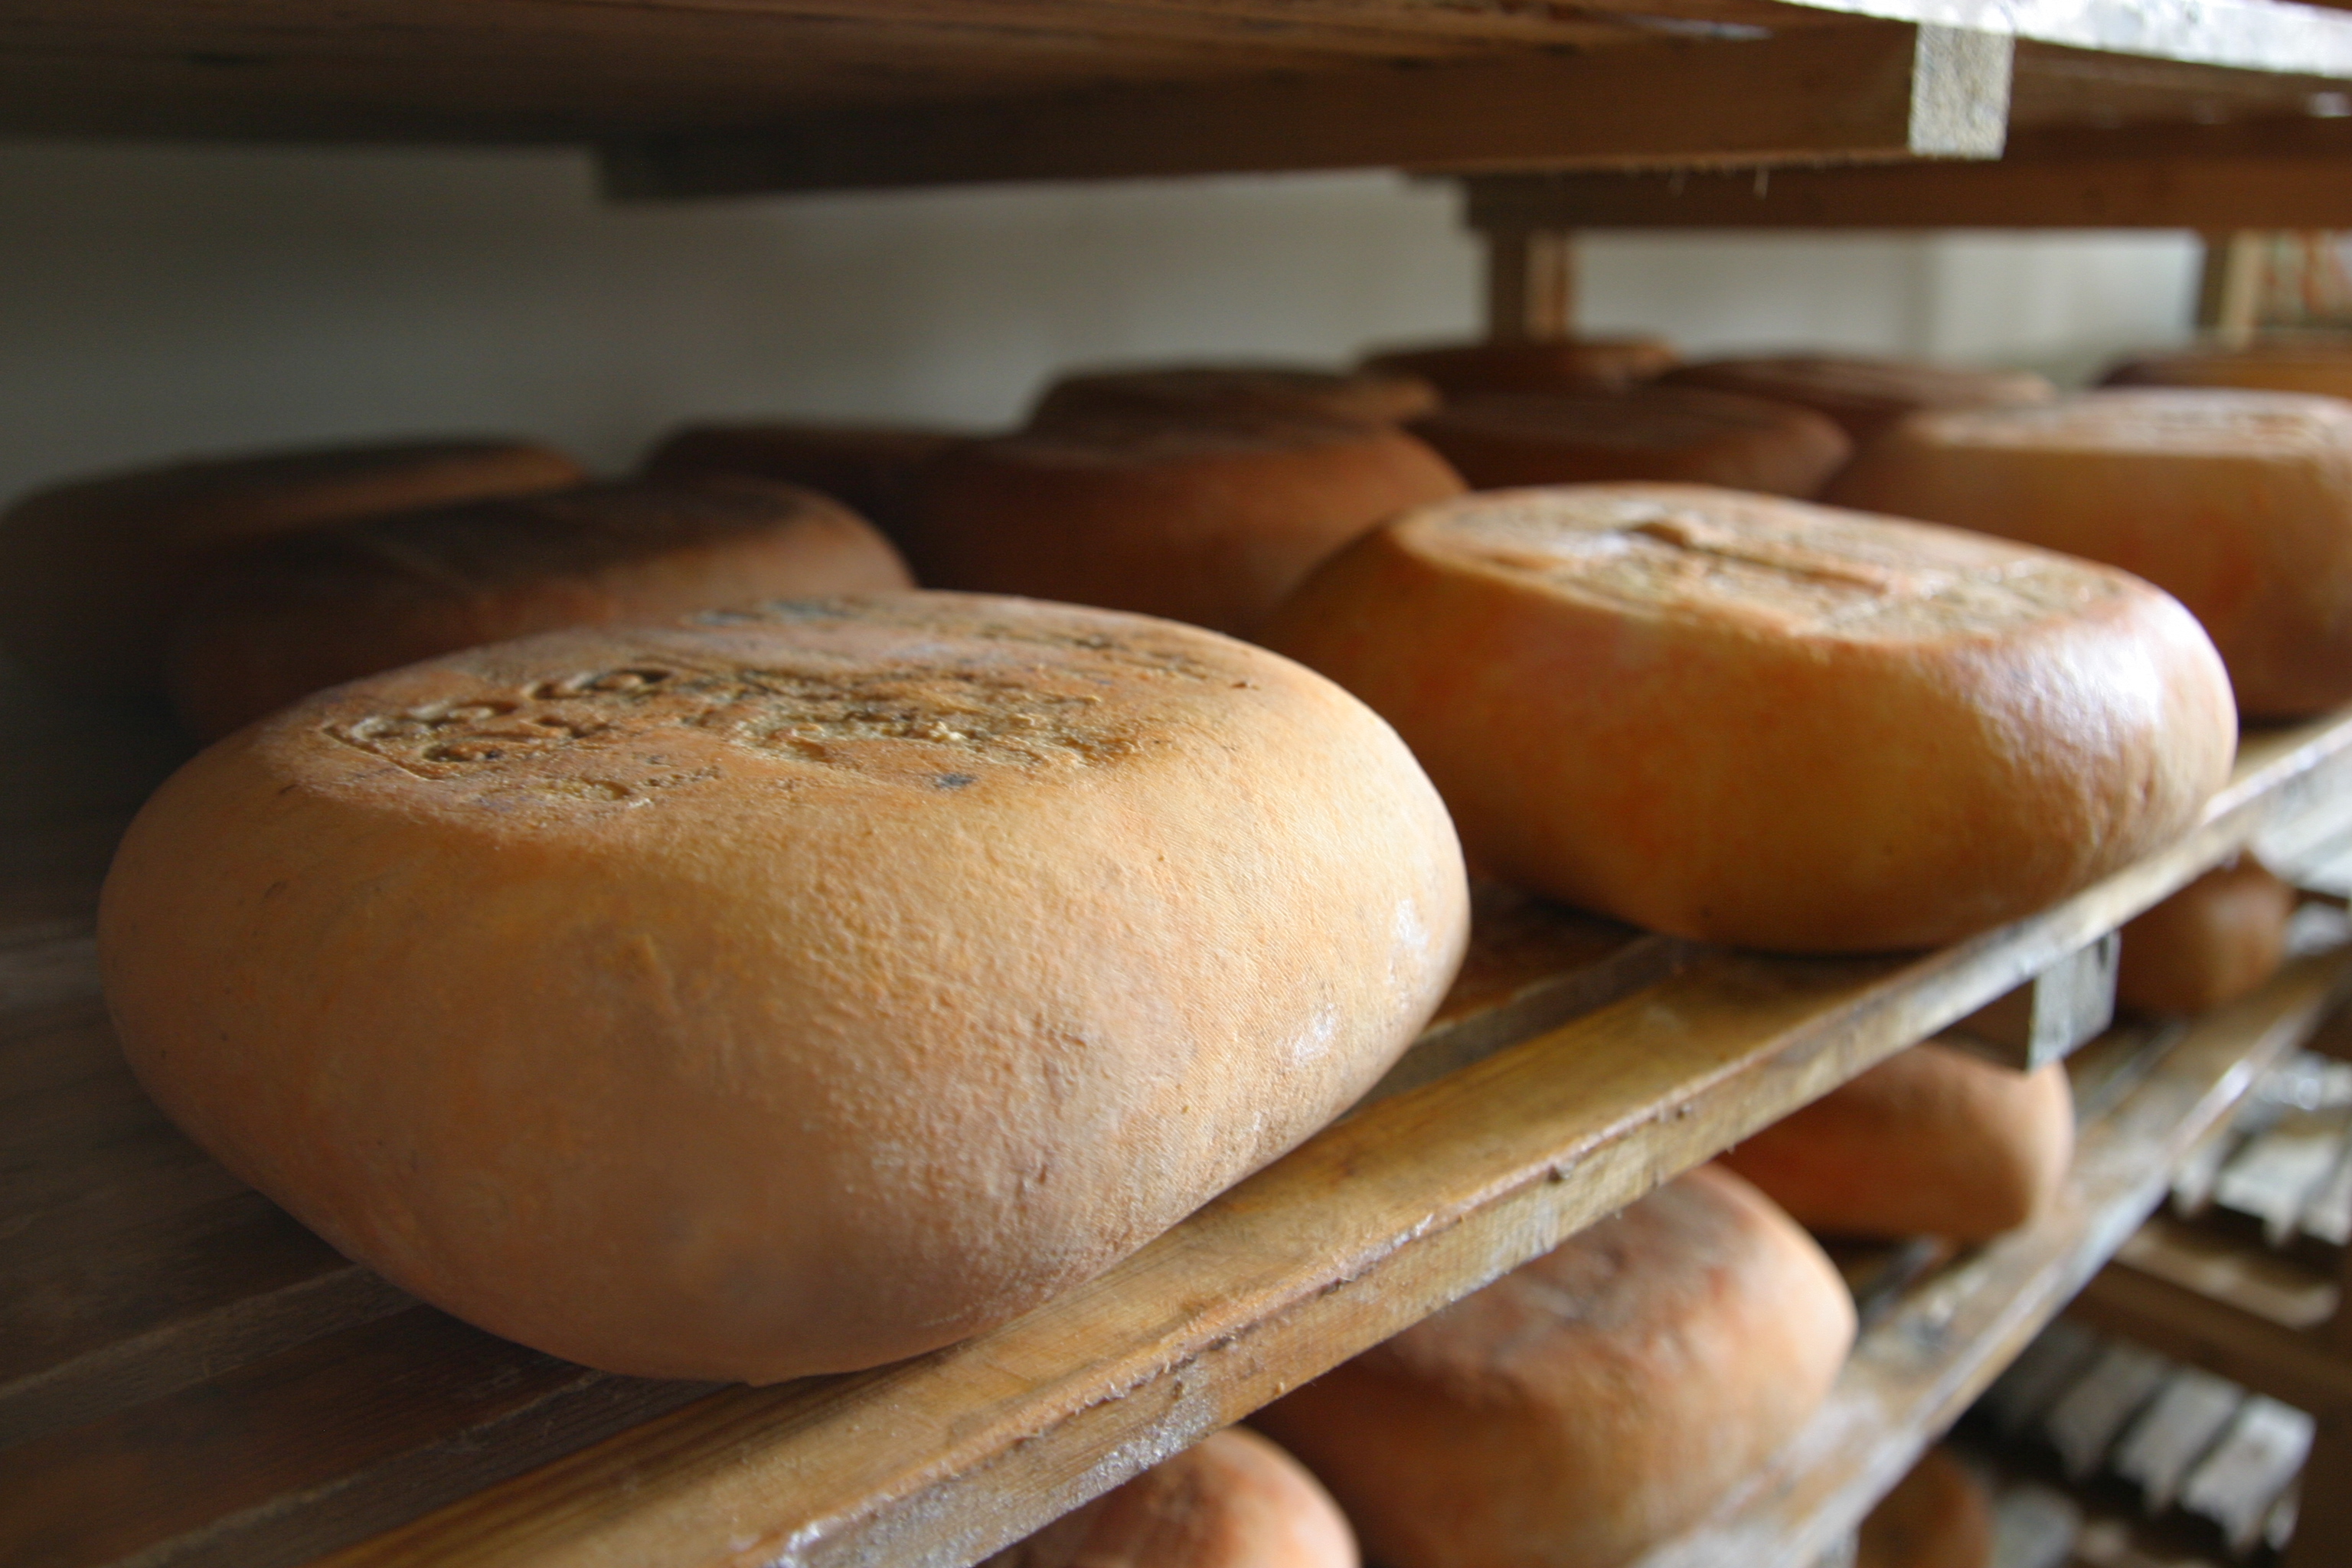 L’any 2021 es comercialitzaren 818 tones de formatge Mahón-Menorca artesà - Notícies - Illes Balears - Productes agroalimentaris, denominacions d'origen i gastronomia balear